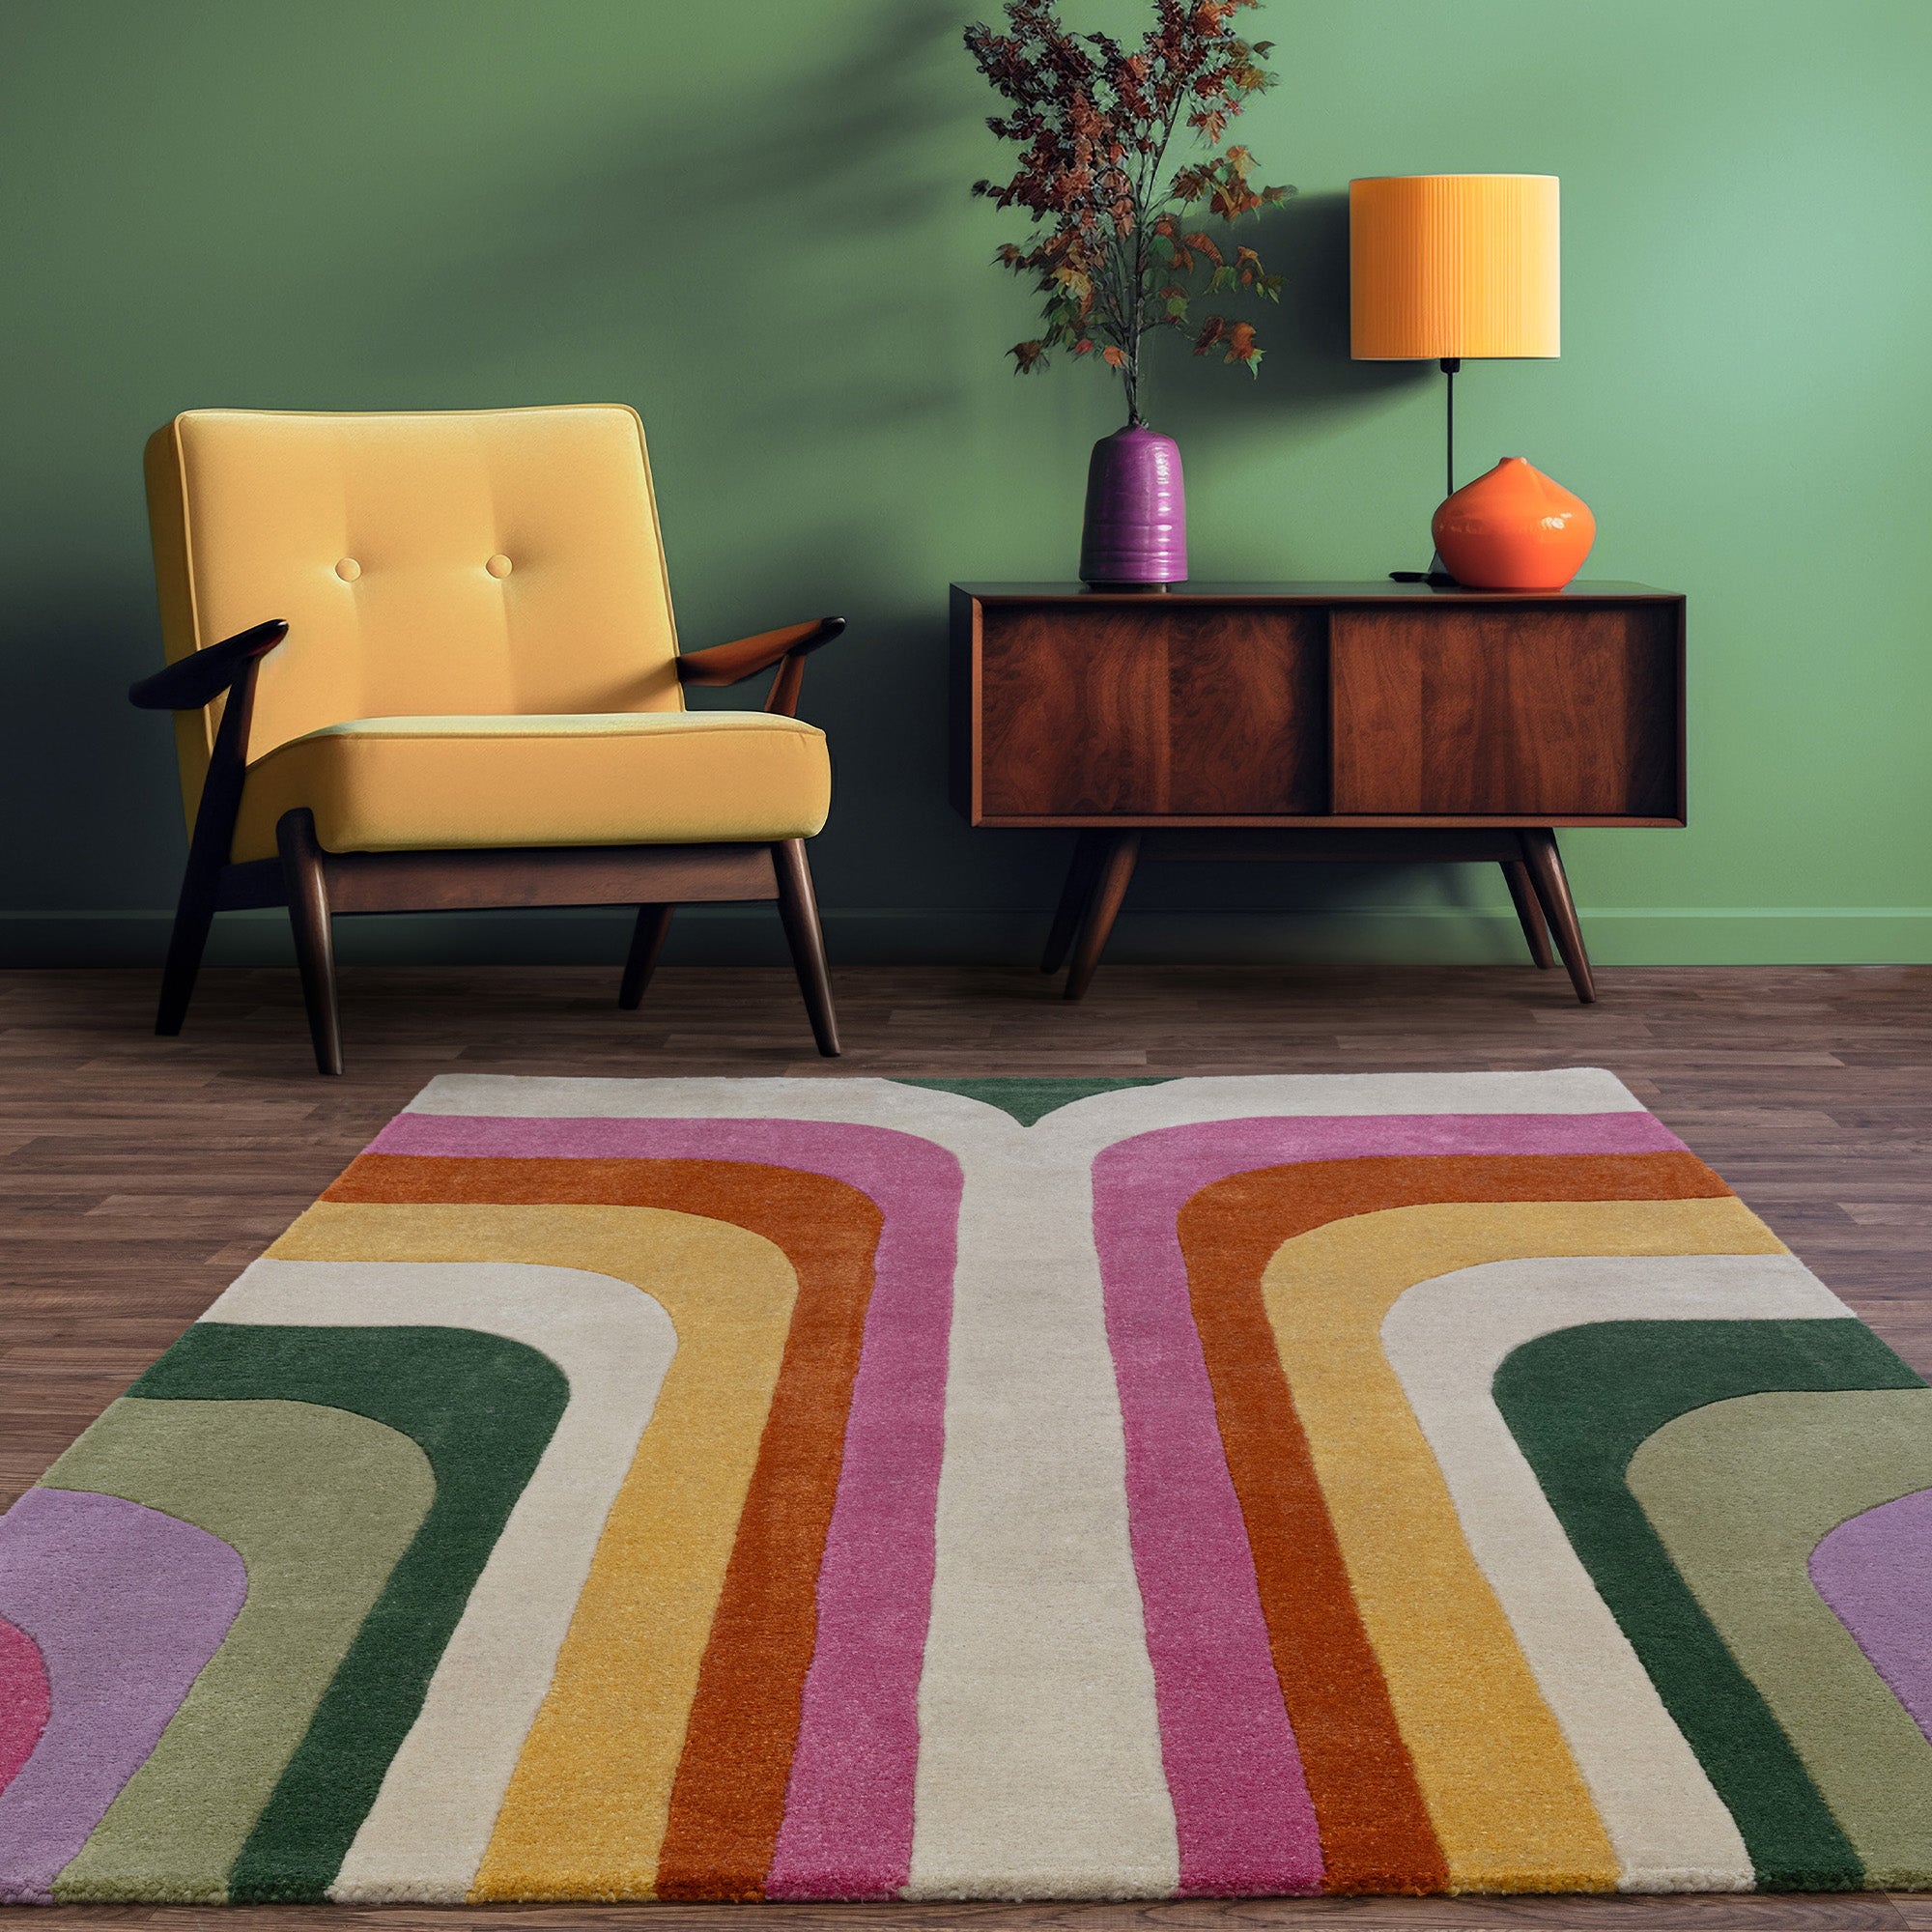 Multicolour retro style rug